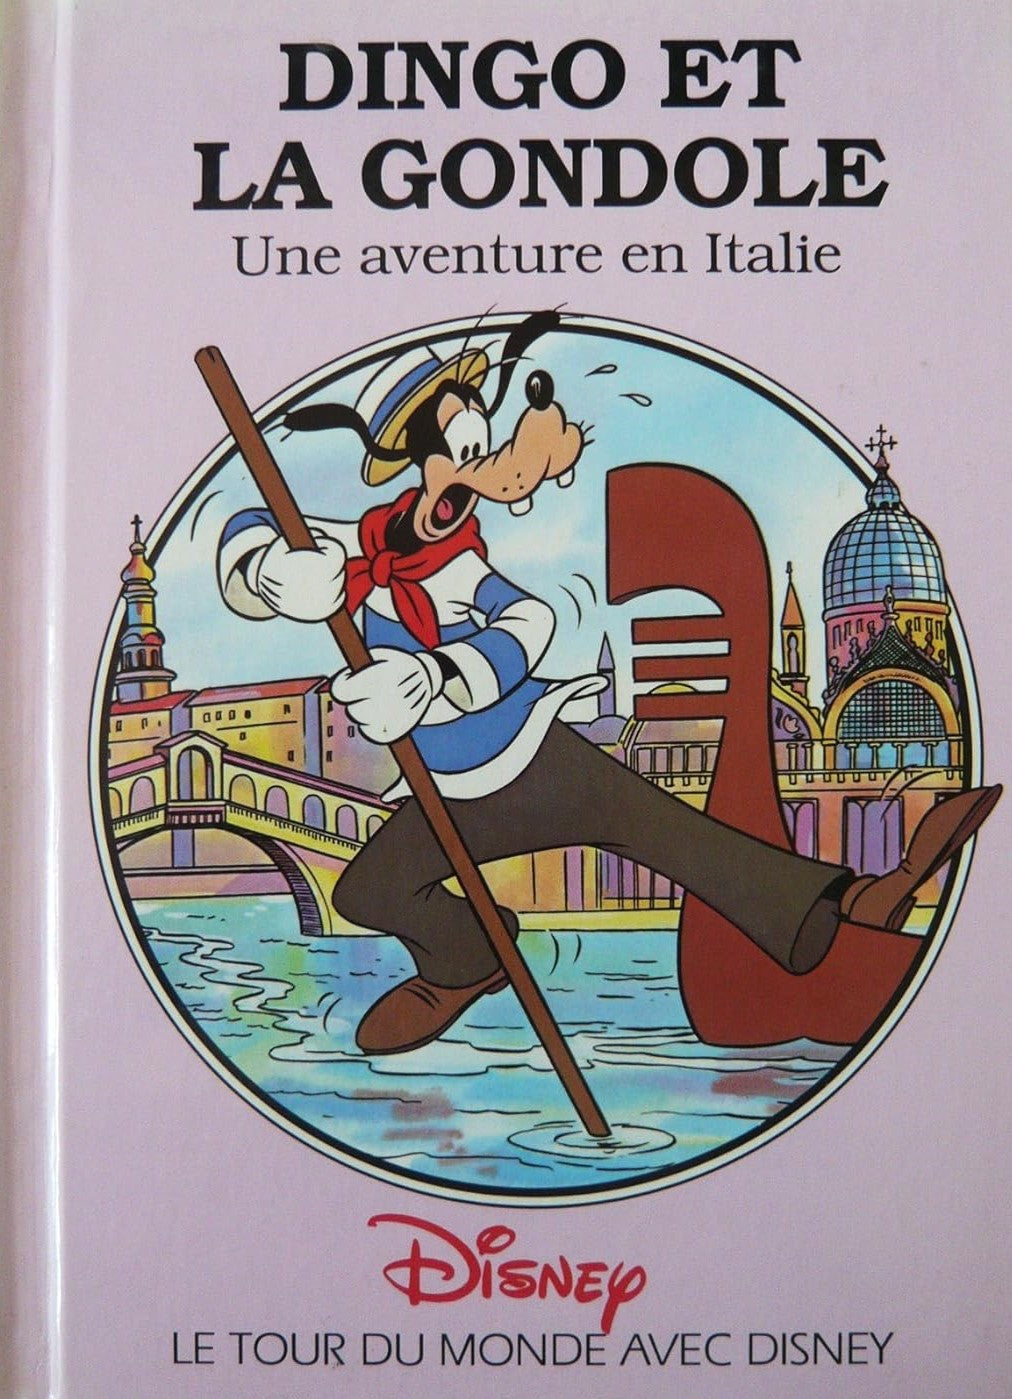 Le tour du monde avec Disney : Dingo et la gondole : Une aventure en Italie